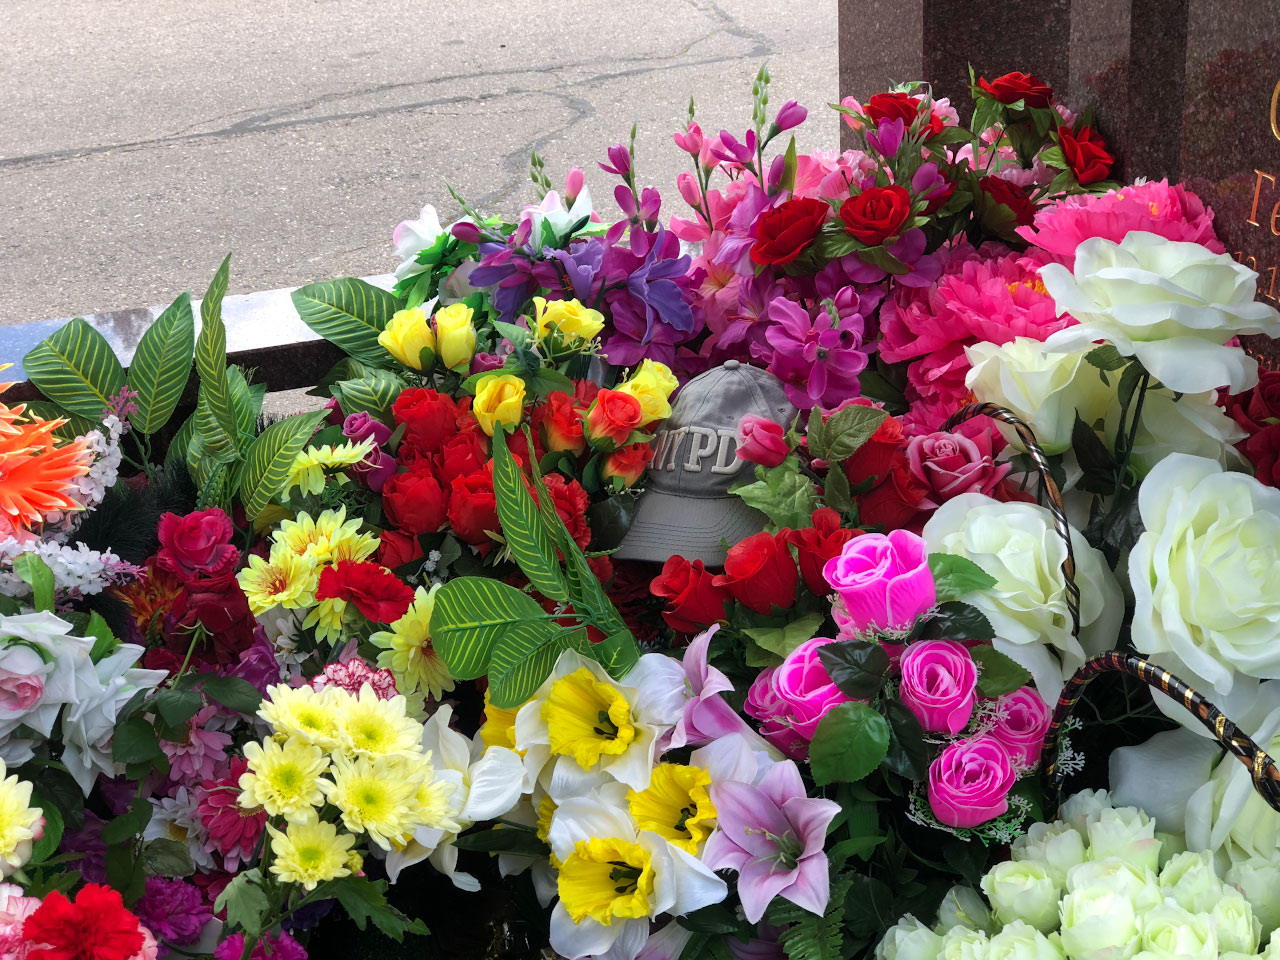 Живым дарят четное или нечетное количество цветов. Чётное число цветов на кладбище. Цветы которые приносят на могилу. Четное количество цветов на могилу.